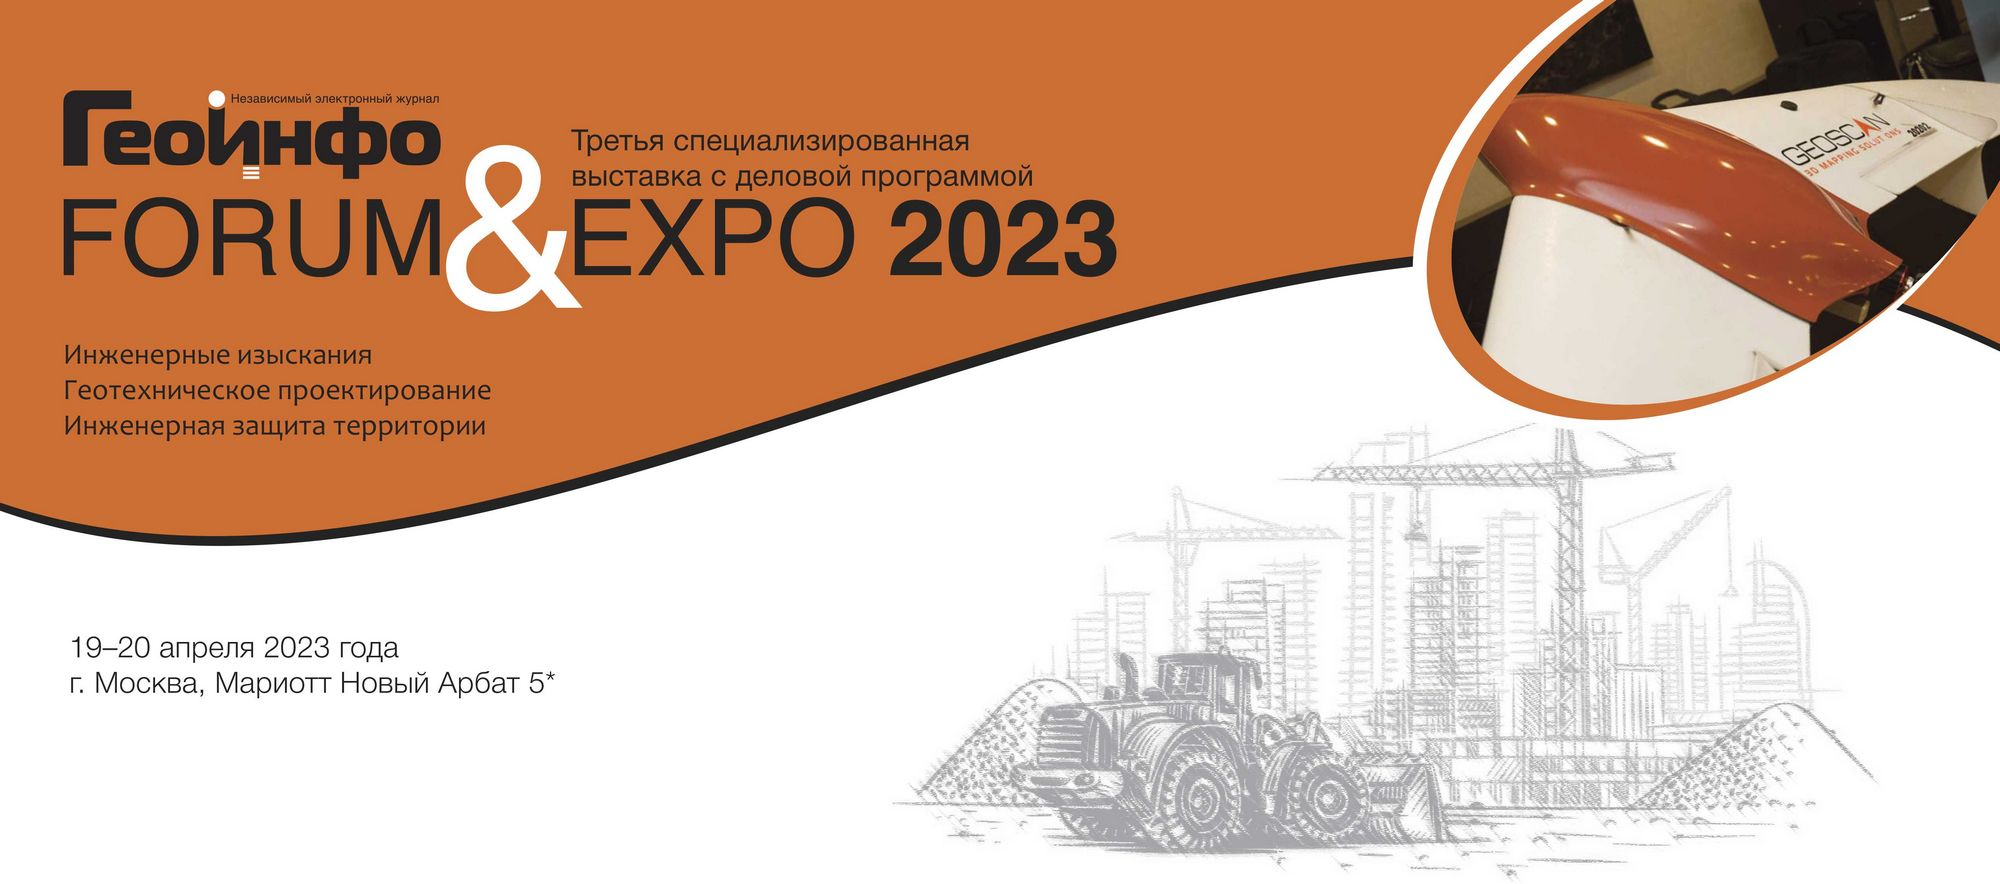 Международная выставка по инженерным изысканиям и геотехническому проектированию ГеоИнфо FORUM & EXPO 2023